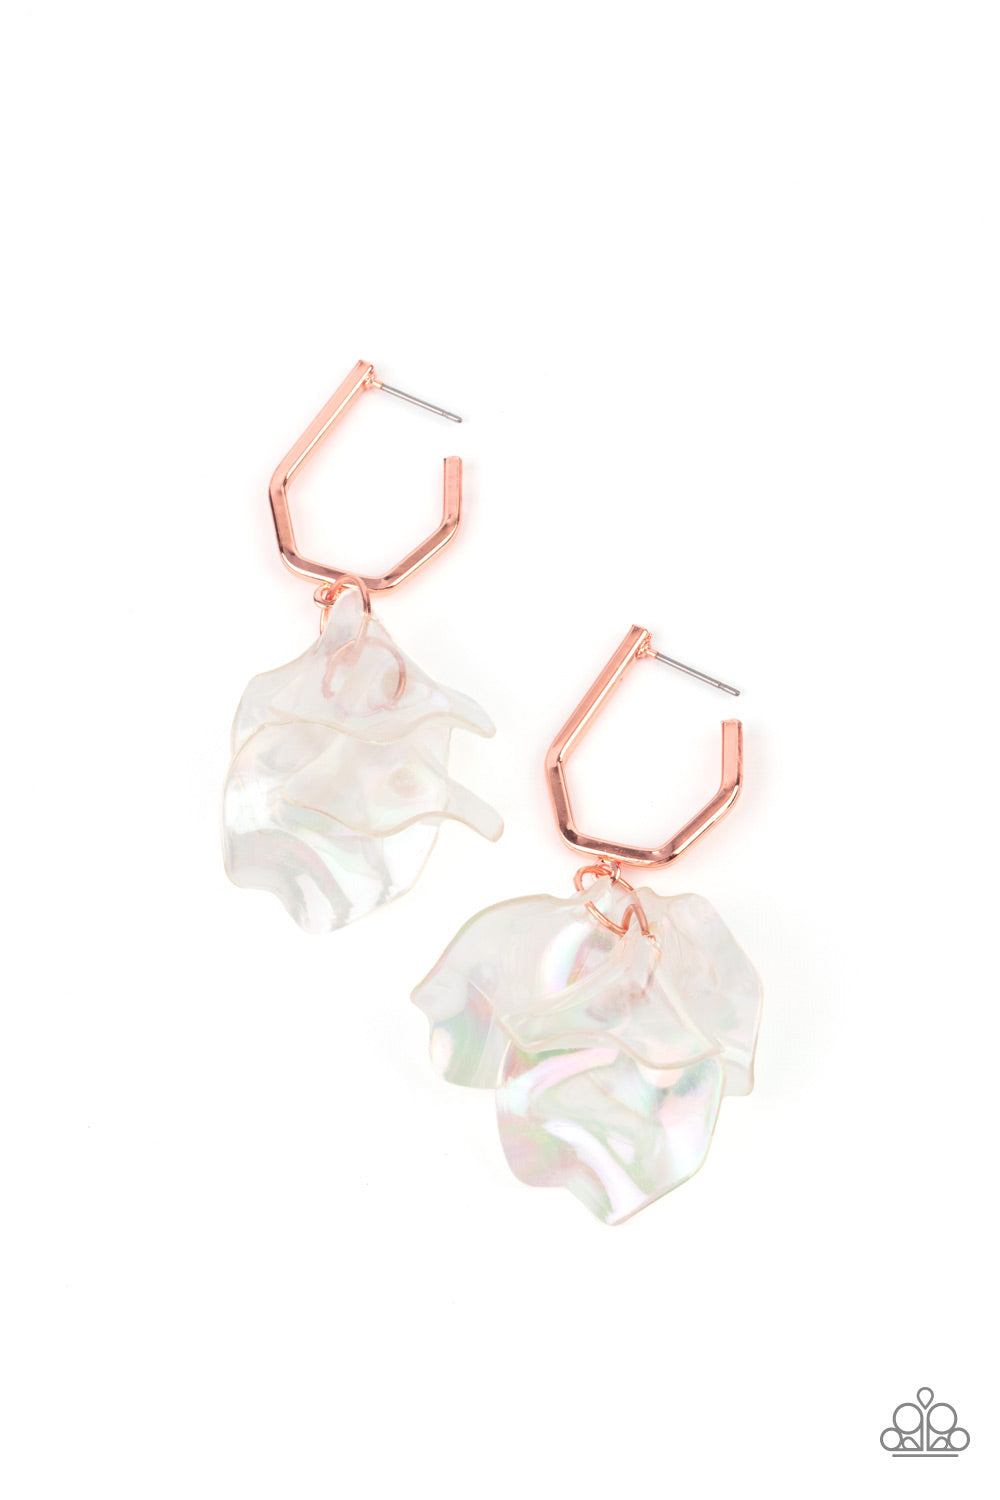 Jaw-Droppingly Jelly Earrings__Copper